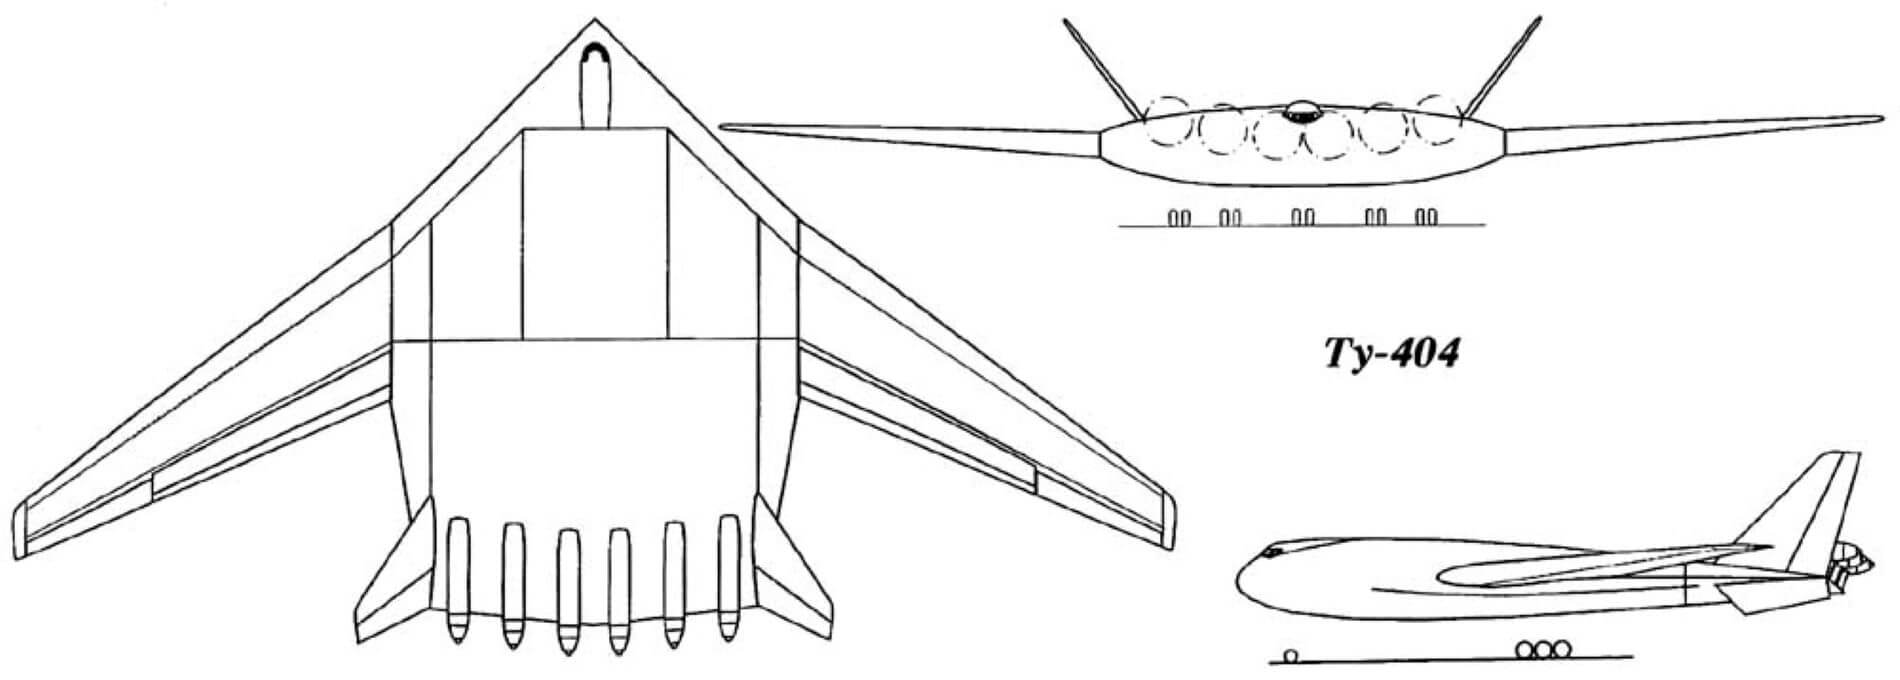 Tupolev Tu-404 blueprint